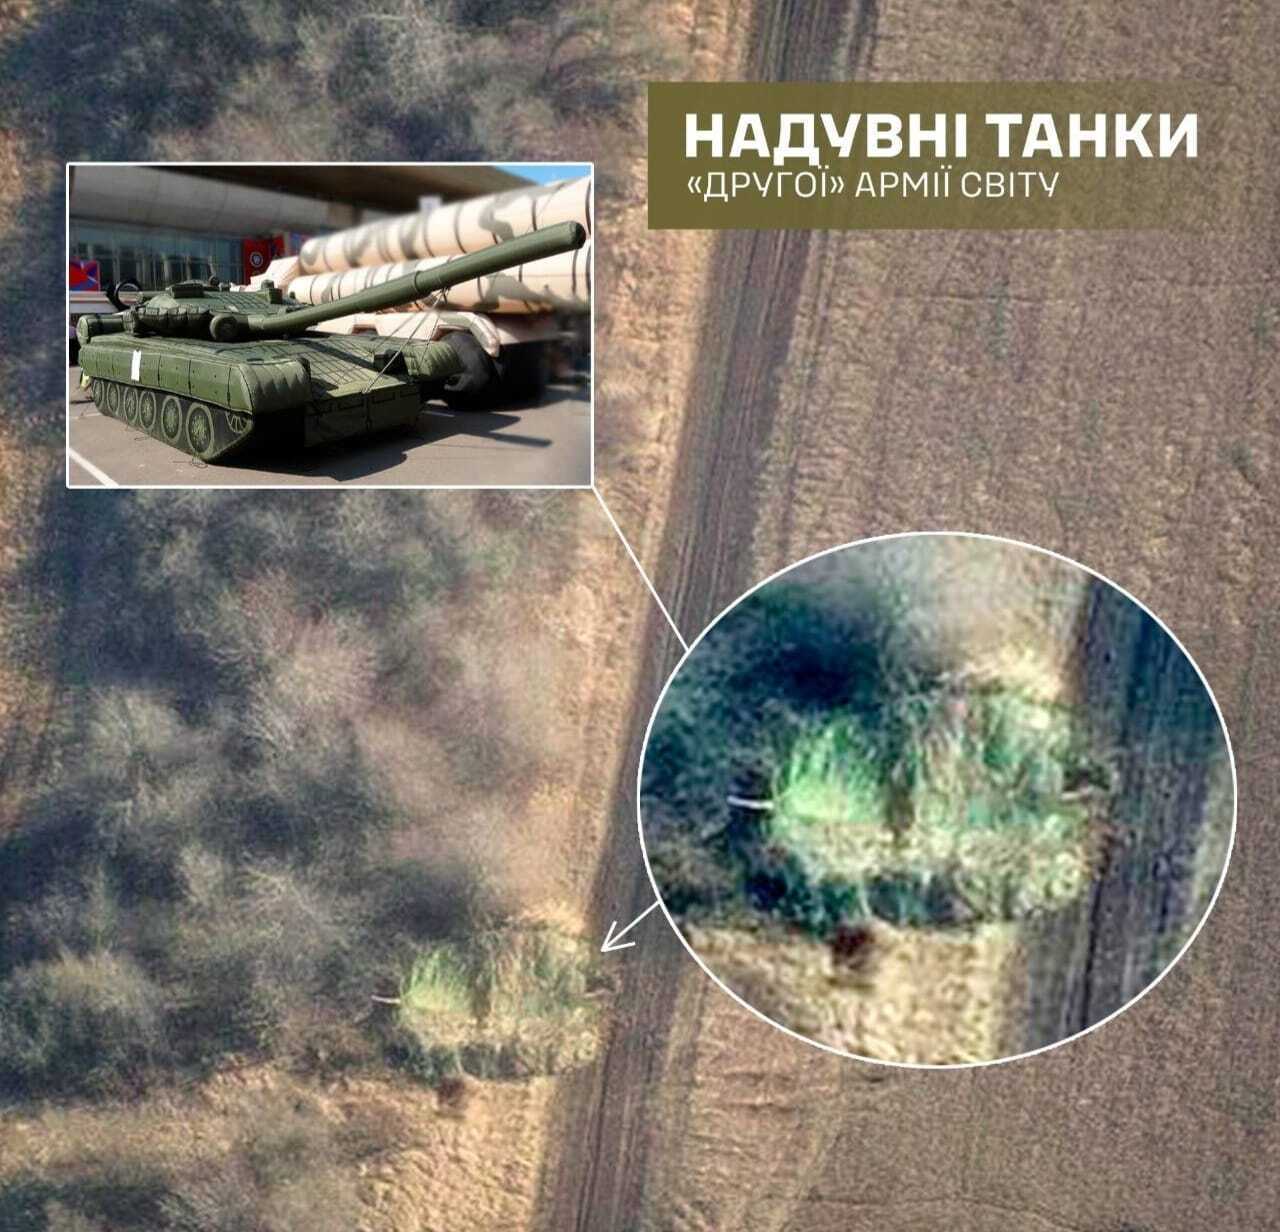 ''Друга армія світу'' використовує гумові танки на полі бою: у ЗСУ пояснили, чого прагнуть окупанти 